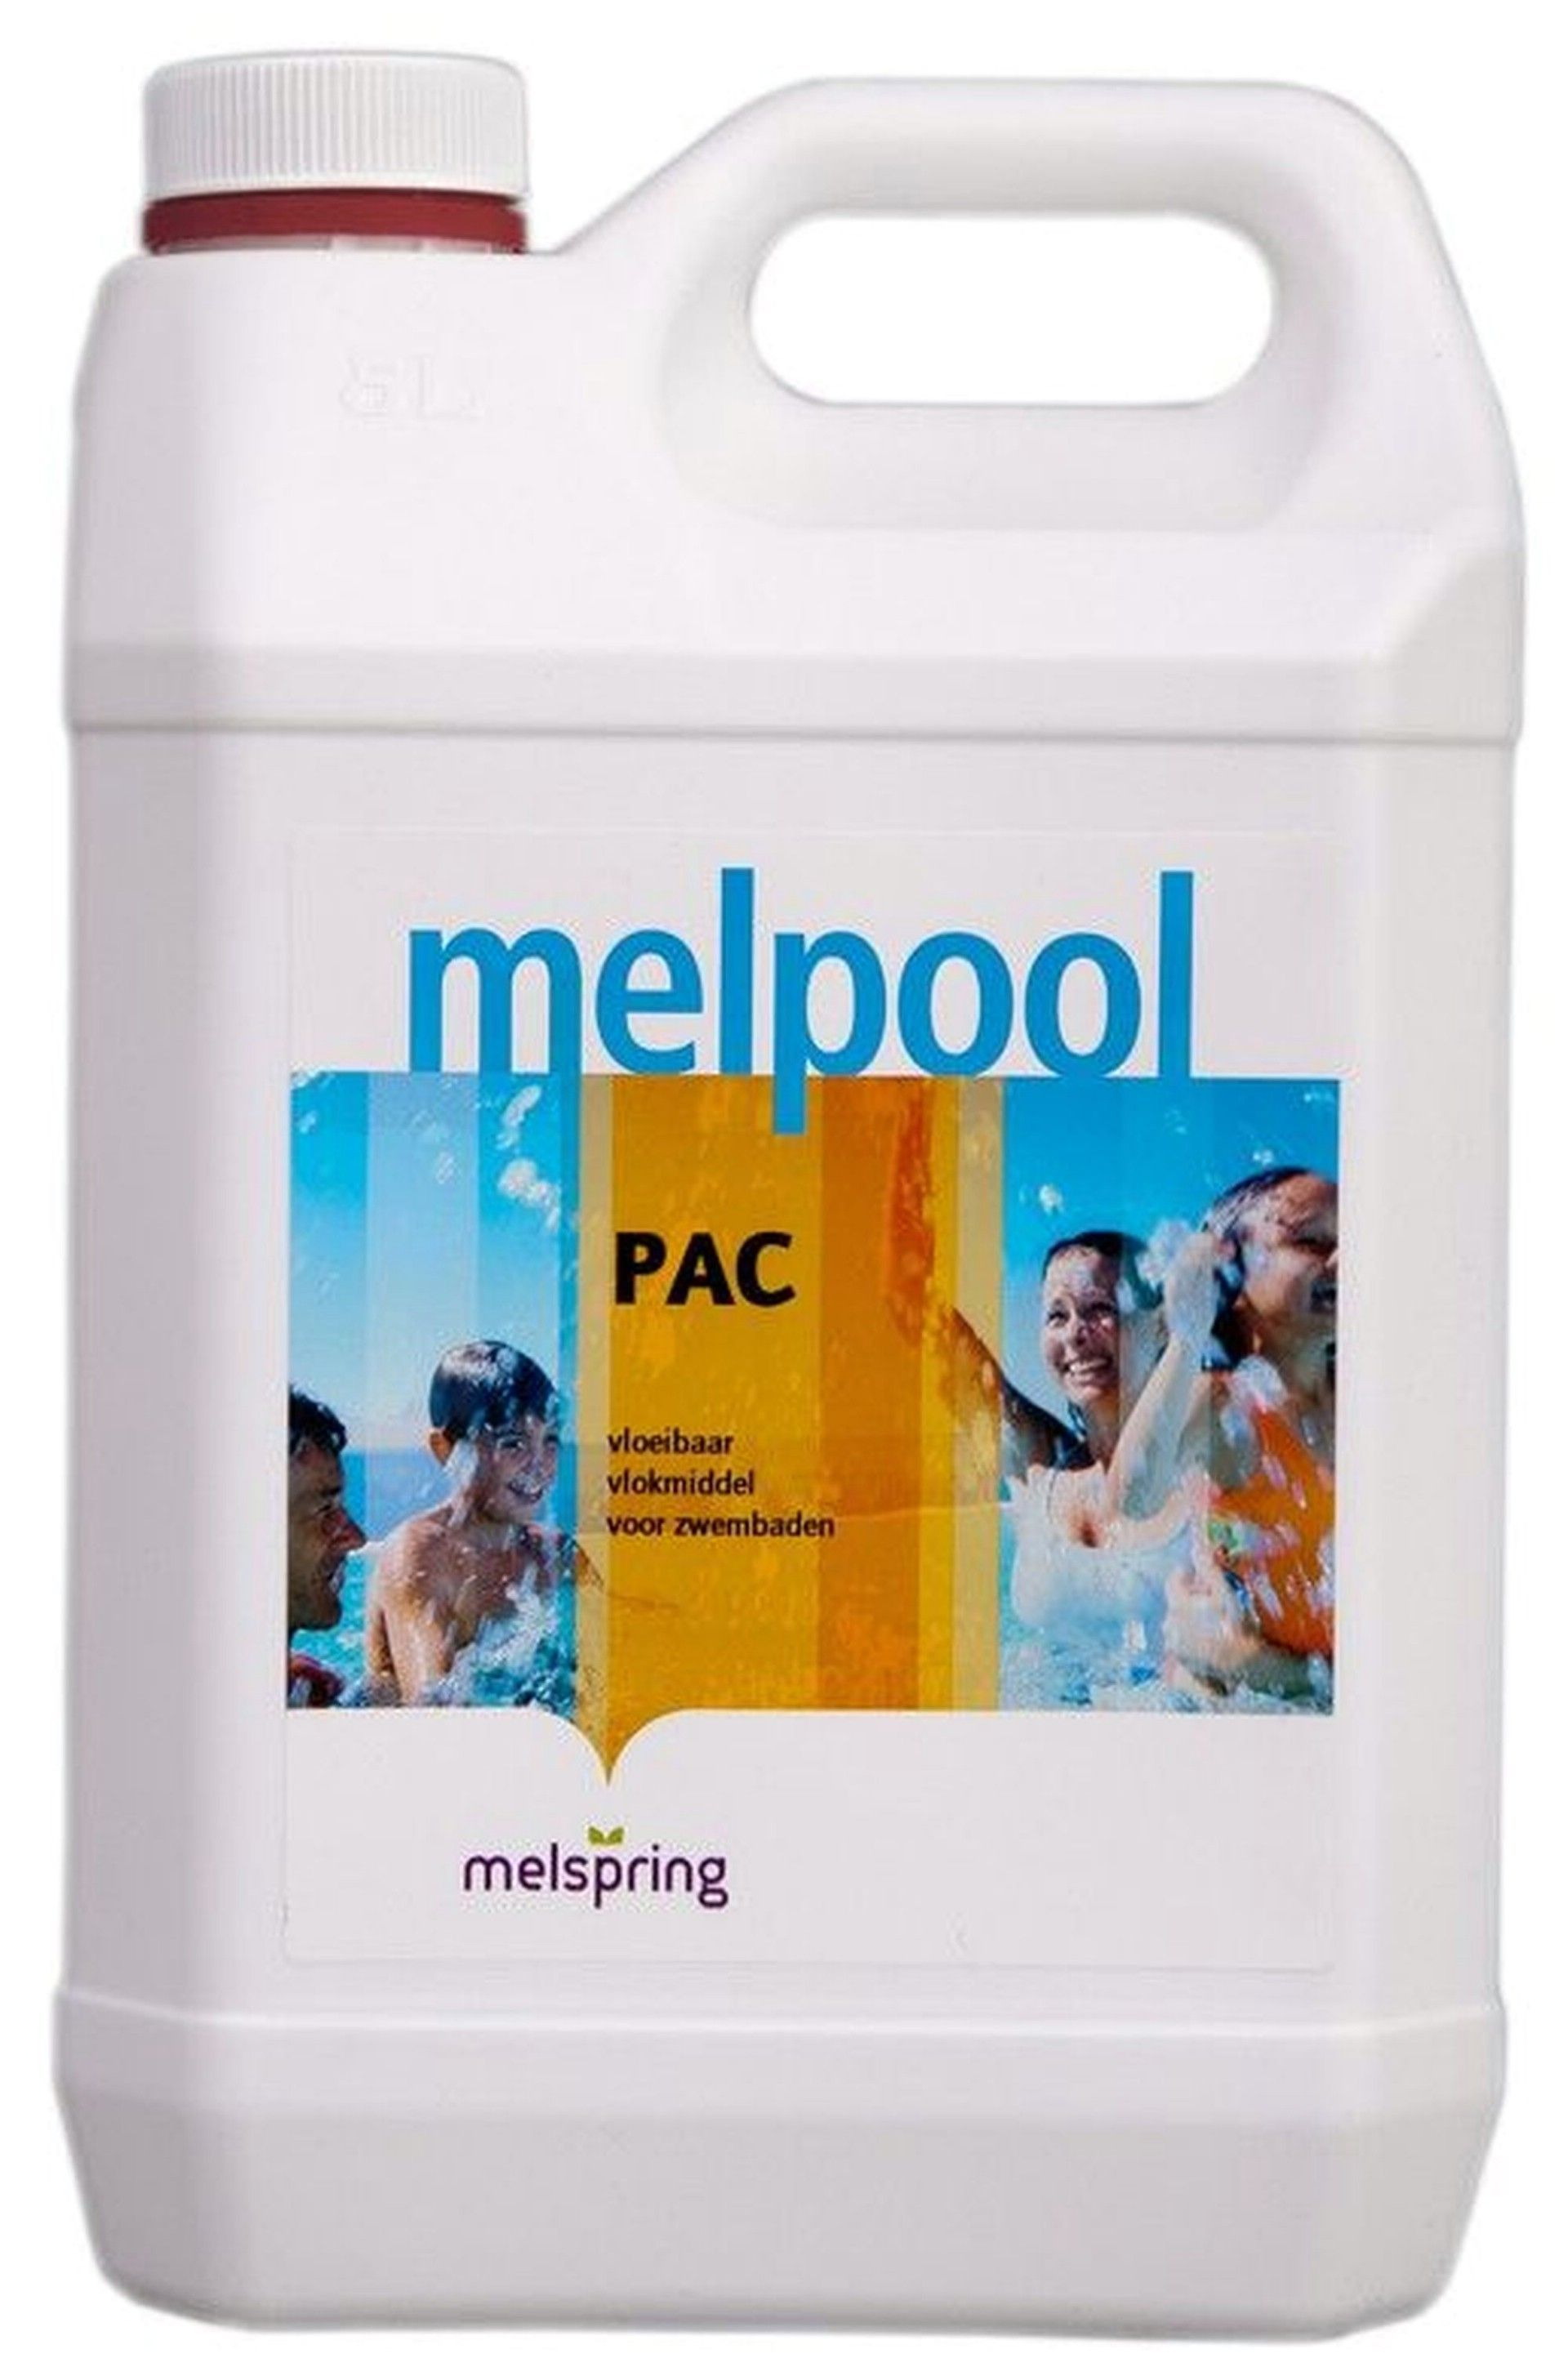 Foto van Melpool PAC - vloeibaar vlokmiddel 5 liter